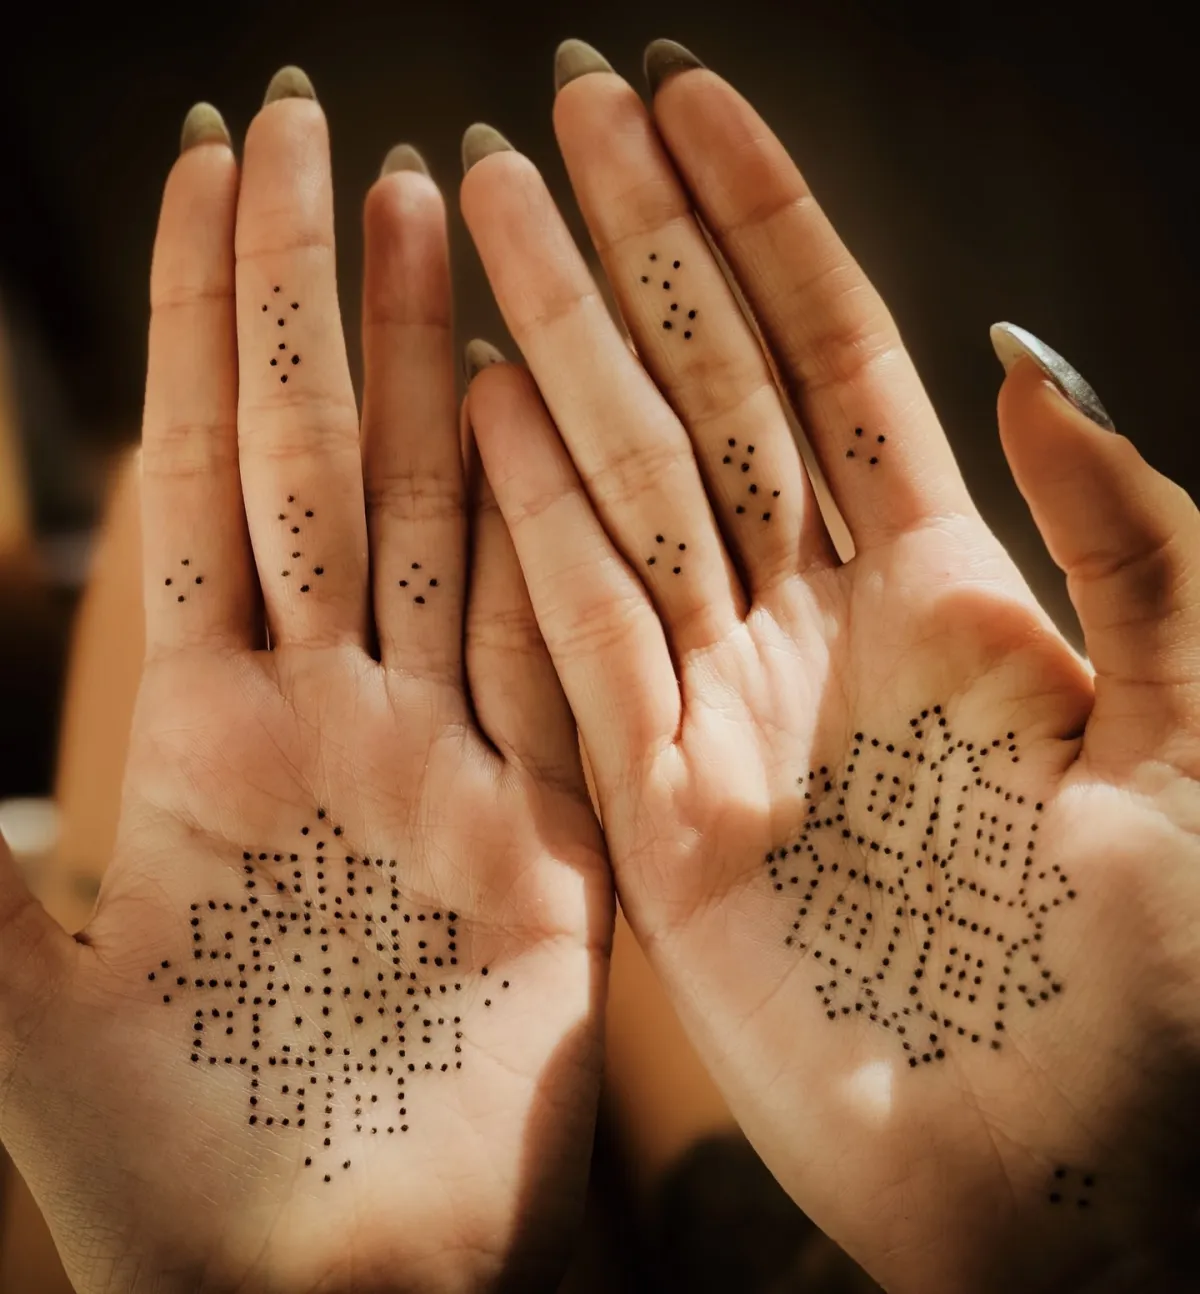 dot work hand und finger tattoos minimalistisch mit ethno motive